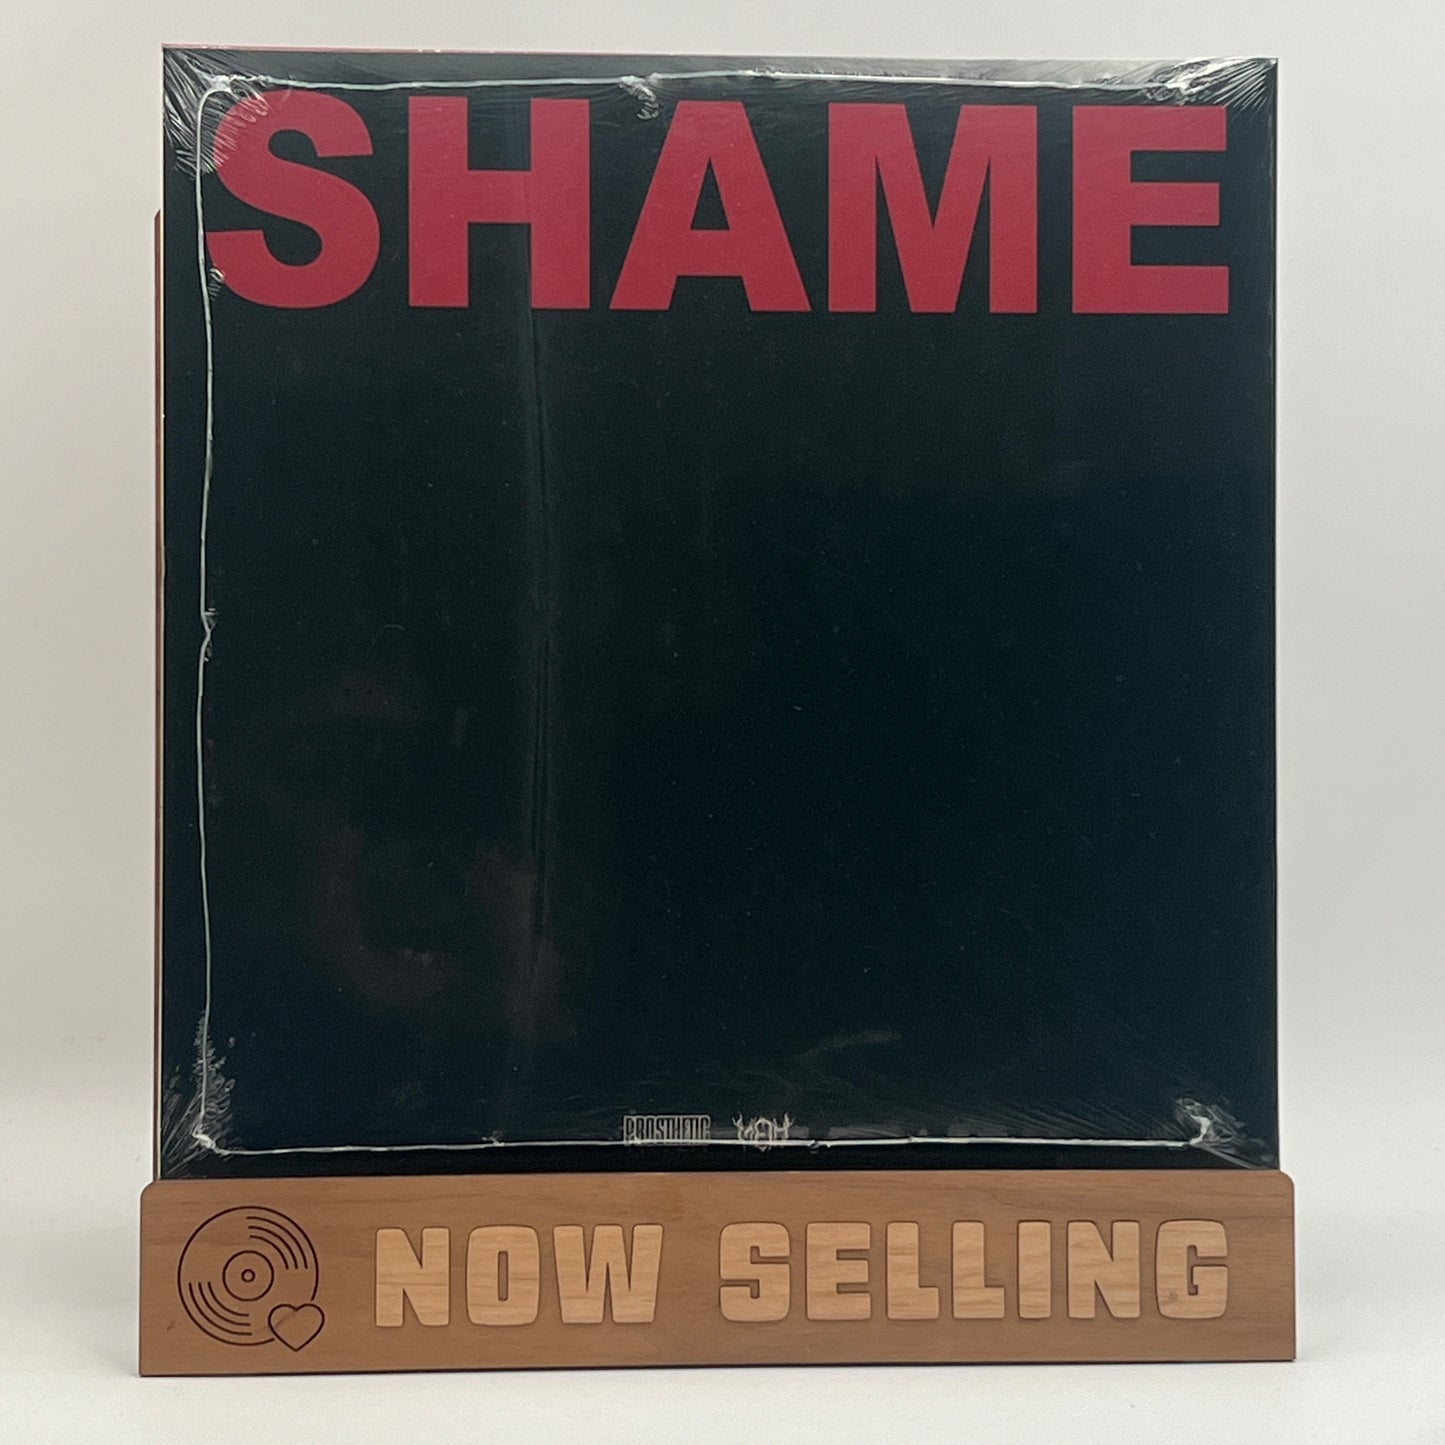 Meth. - Shame Vinyl LP SEALED White